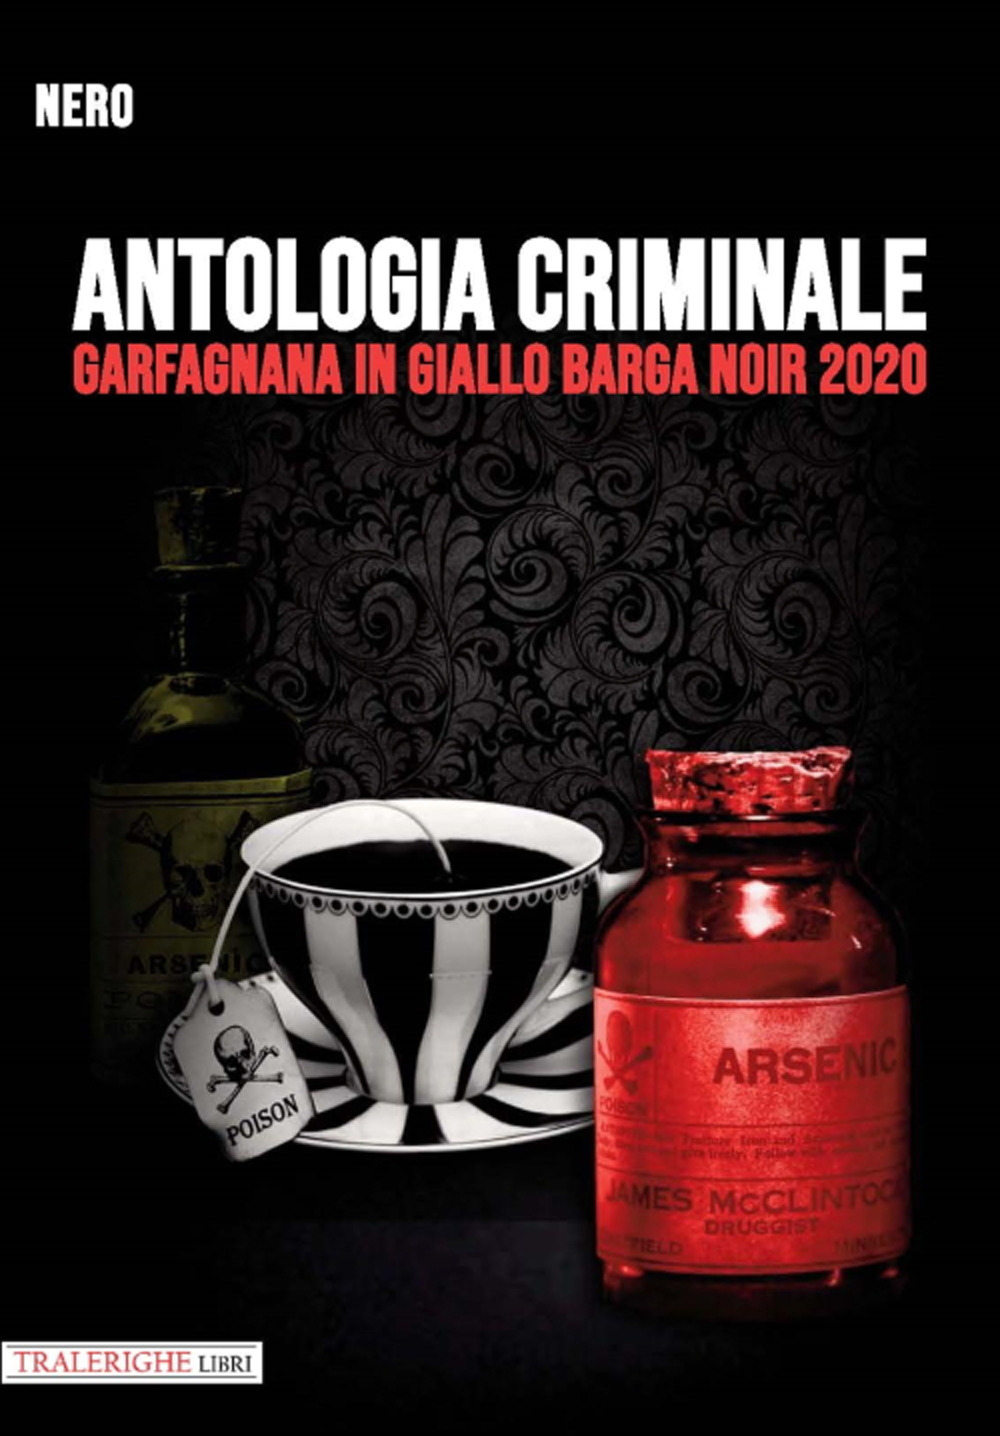 Garfagnana in giallo Barga Noir 2020. Antologia criminale